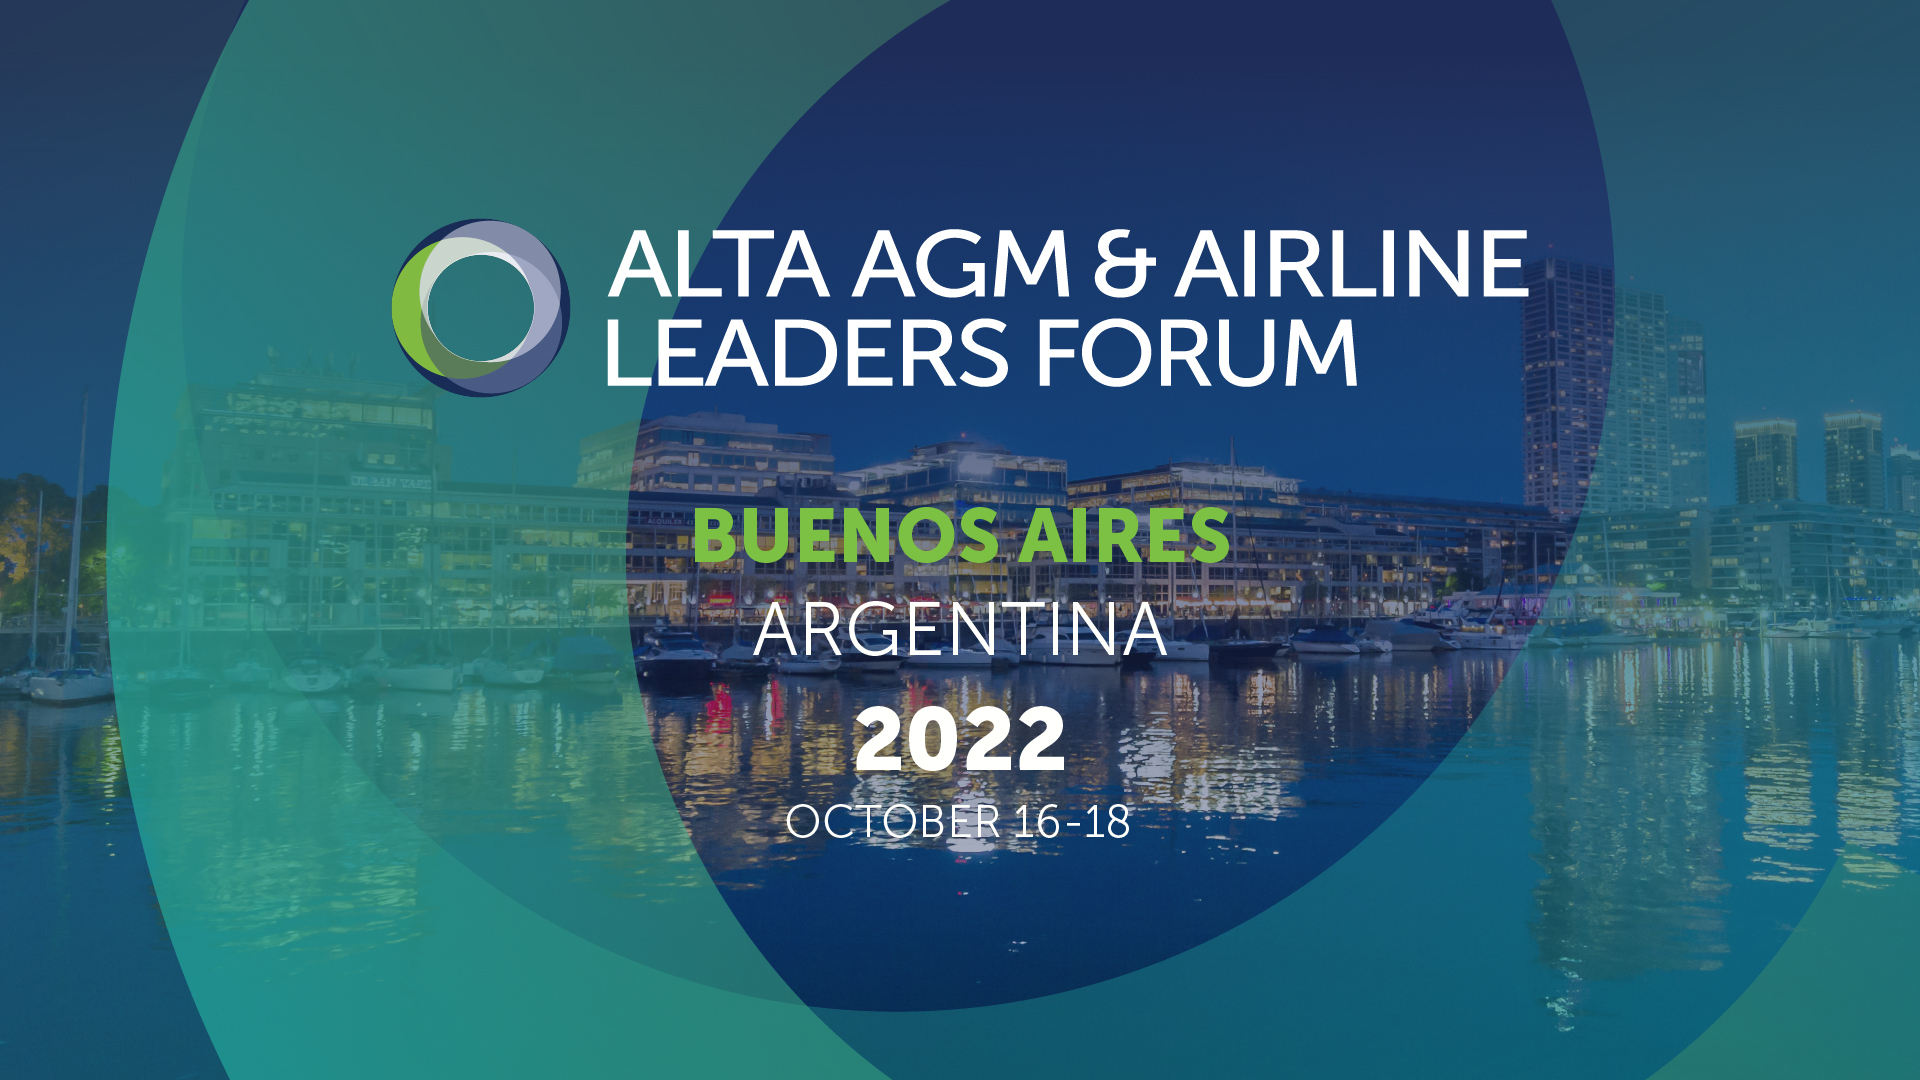 ALTA NEWS - Argentina recebe líderes da aviação da América Latina e Caribe no Fórum de Líderes da ALTA AGM & Airline